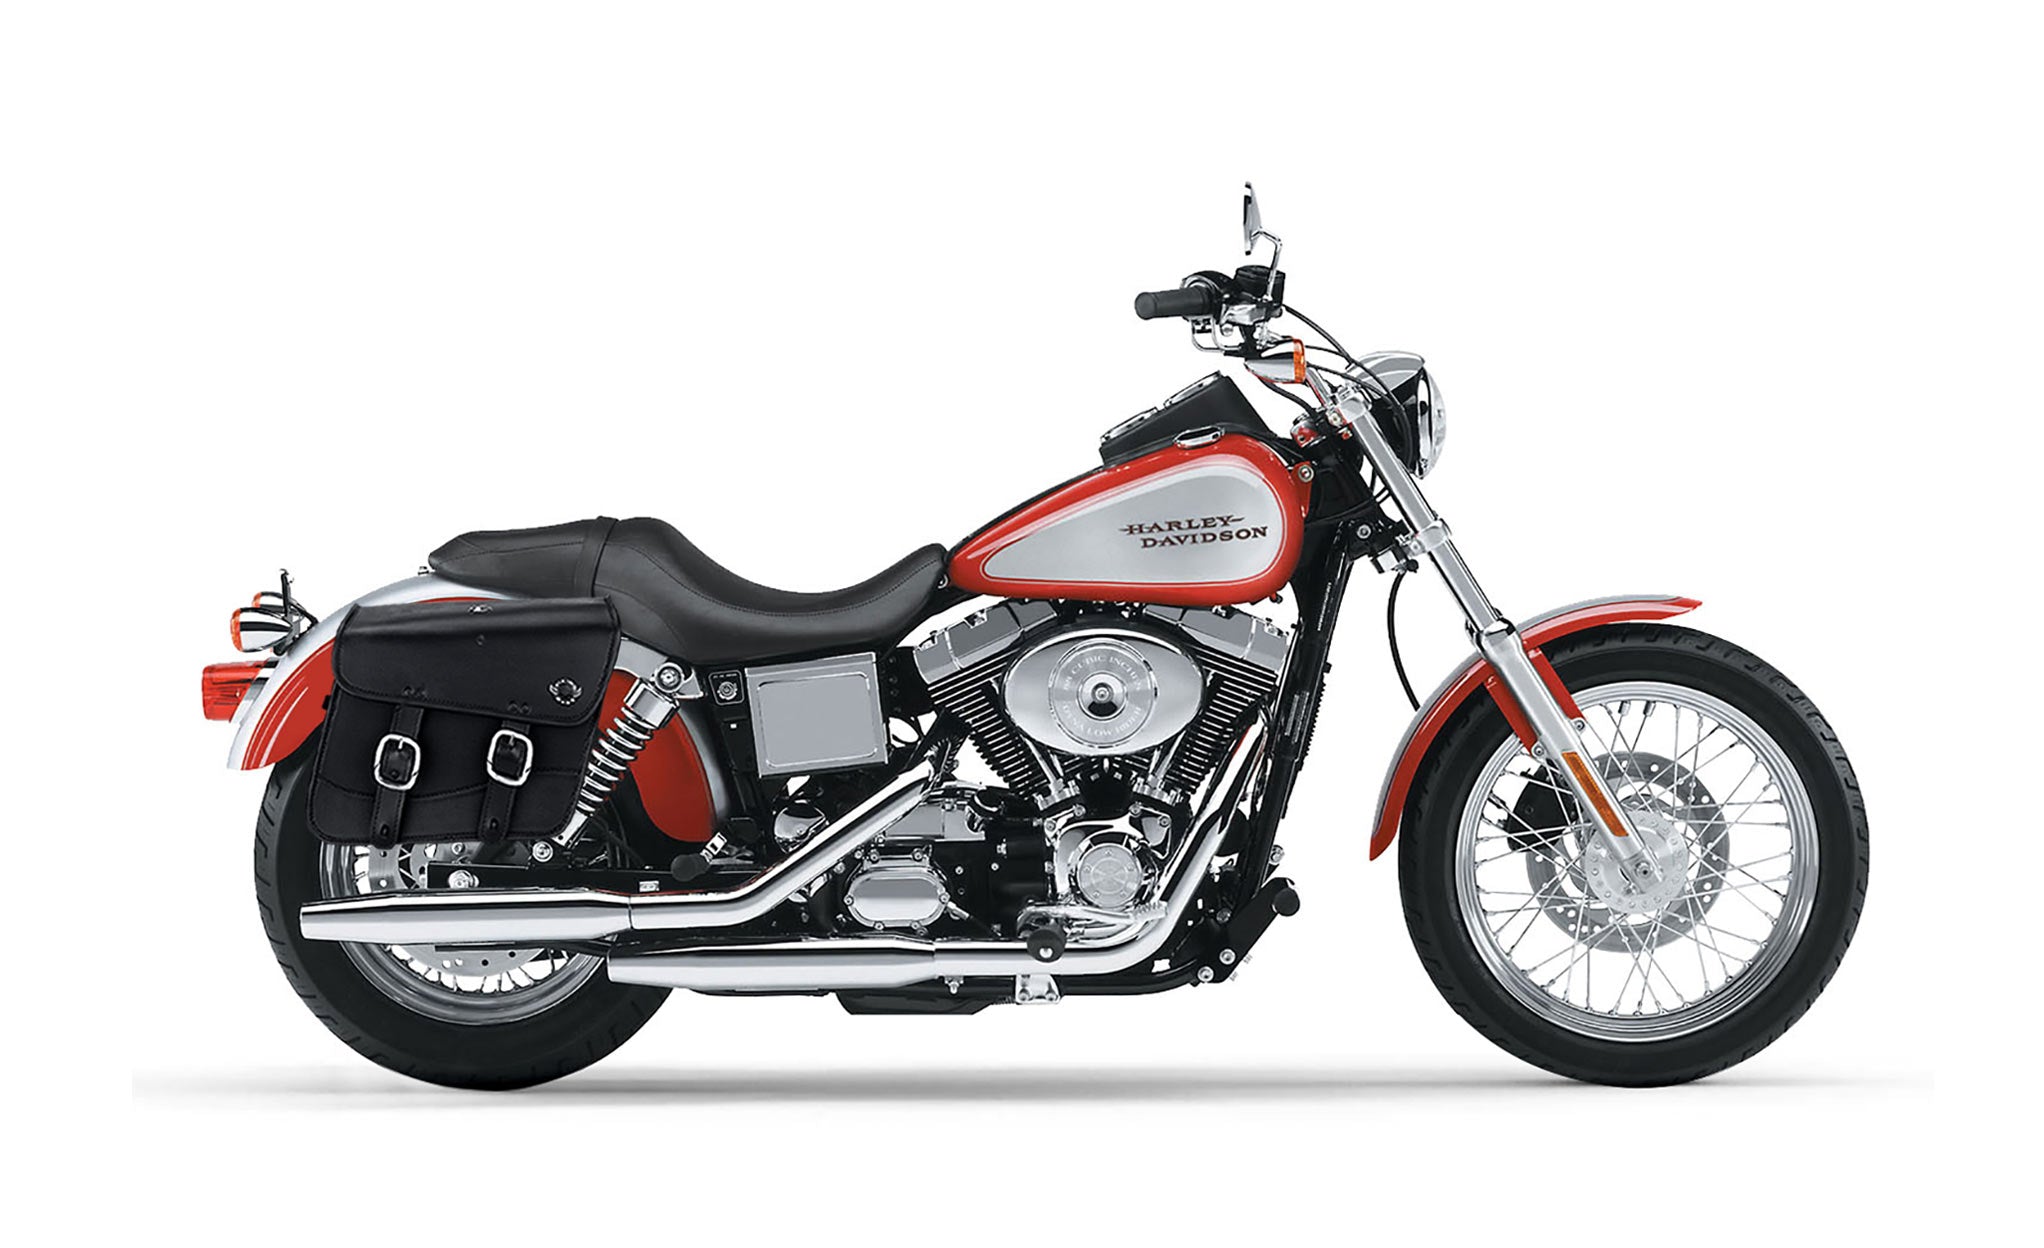 Viking Thor Medium Leather Motorcycle Saddlebags For Harley Davidson Dyna Low Rider Fxdl I on Bike Photo @expand